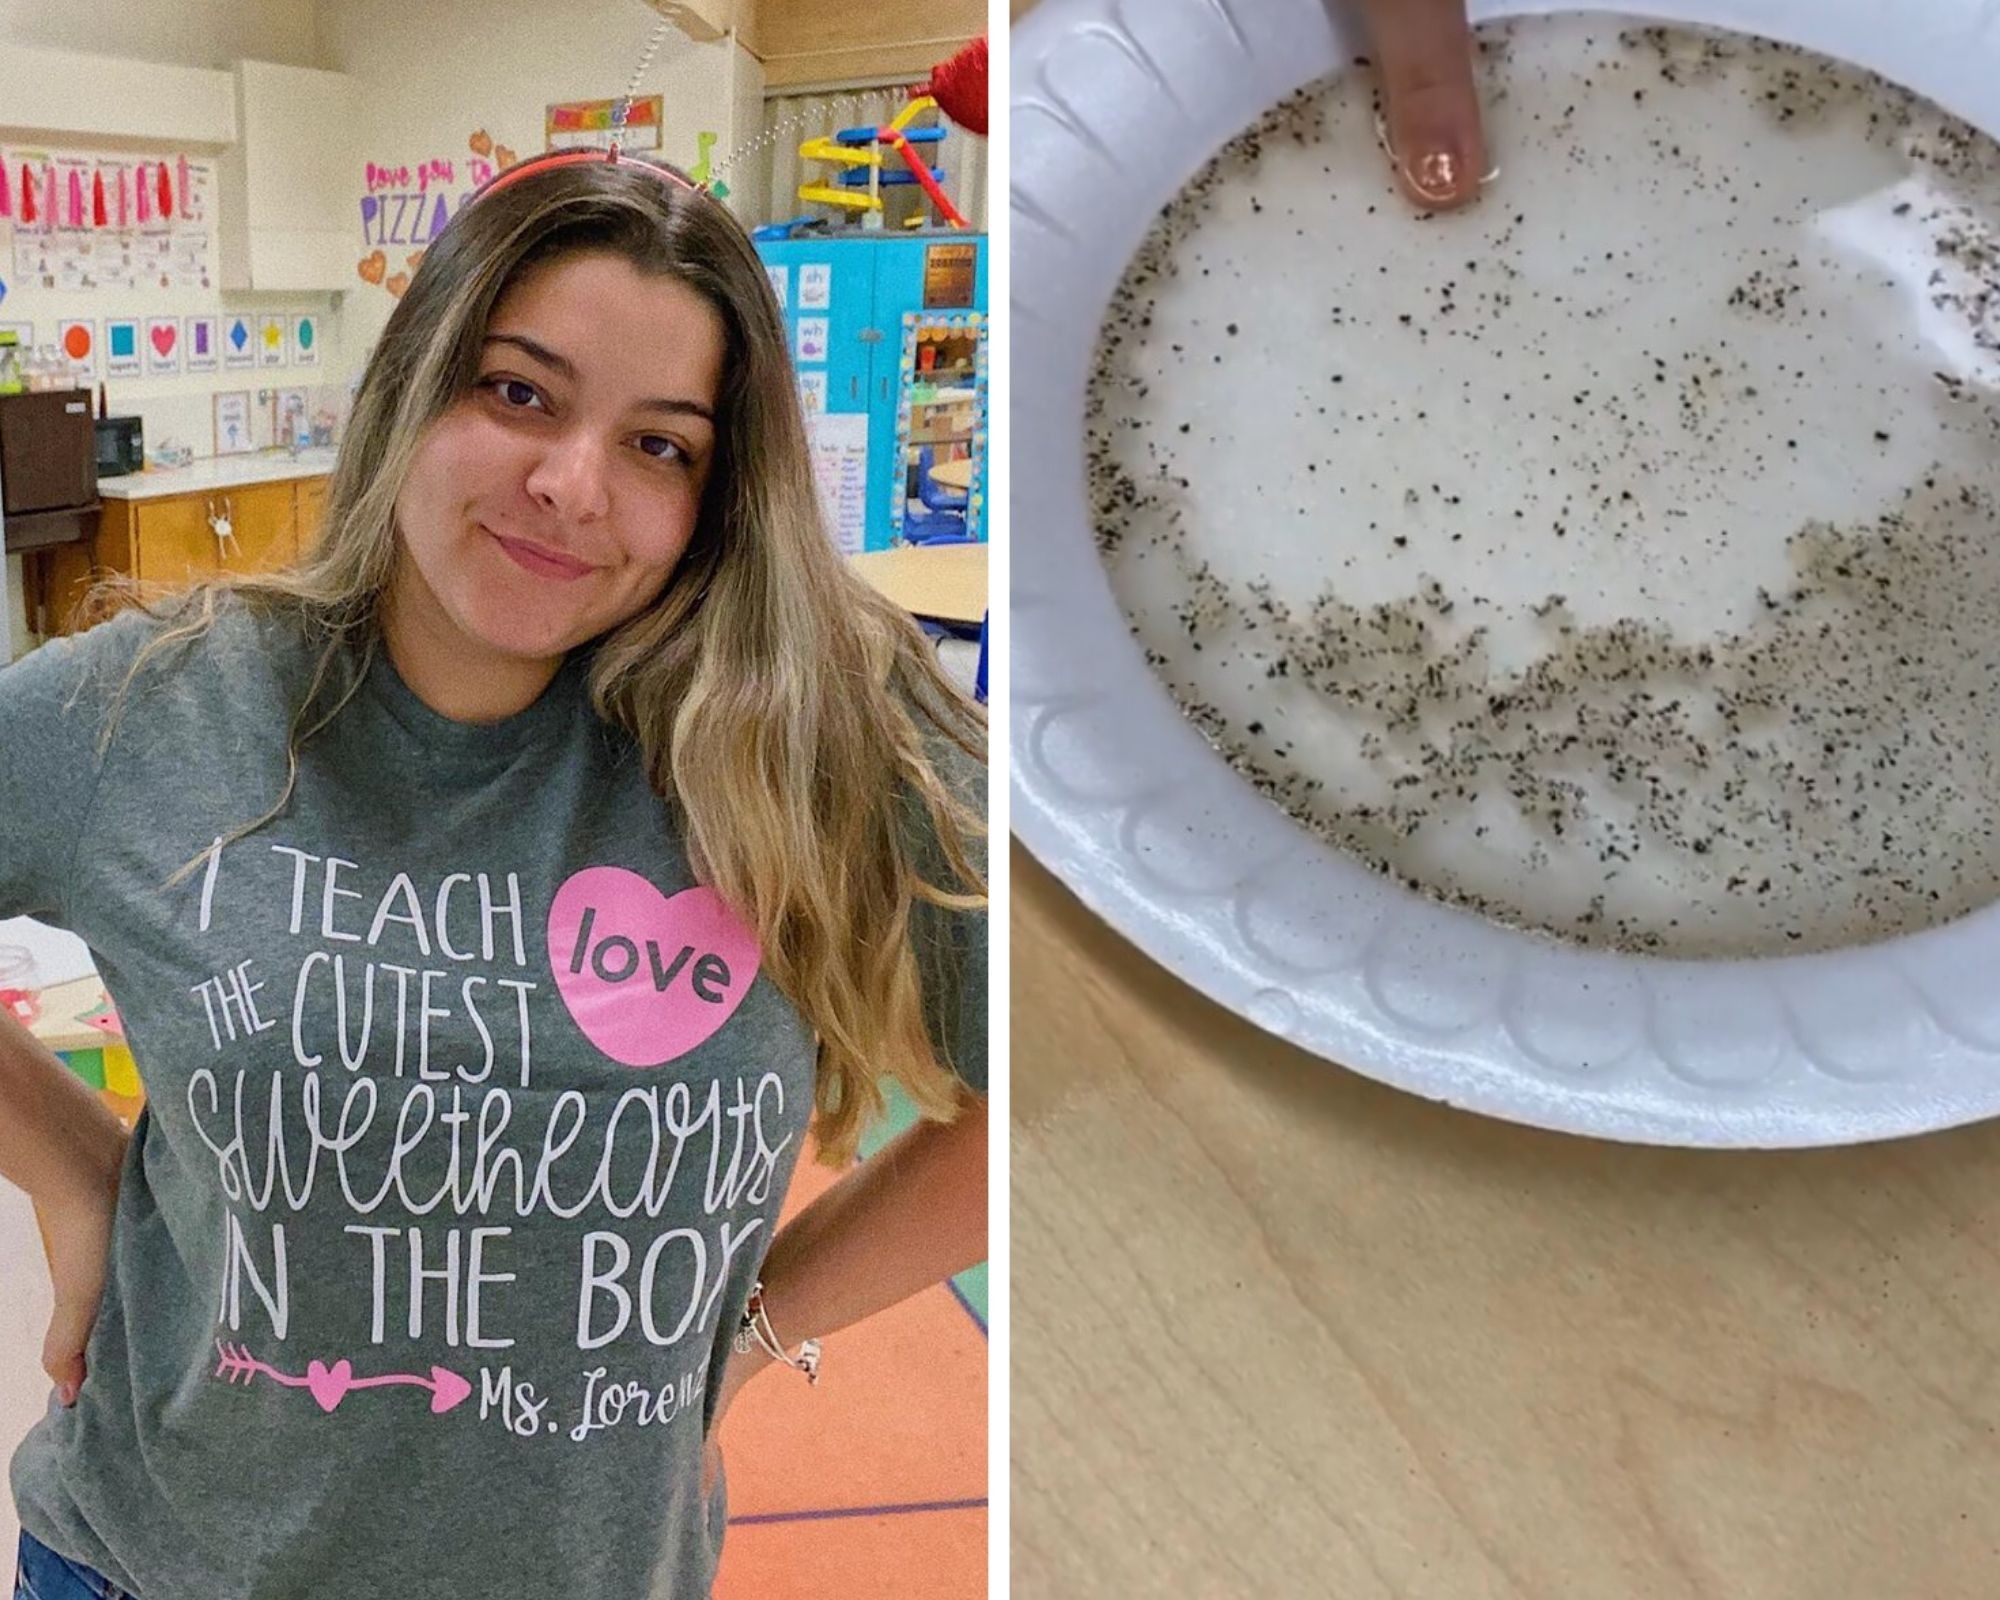 Amanda Lorenzo ensinou aos alunos a importância de lavar as mãos (Foto: Reprodução/Instagram)